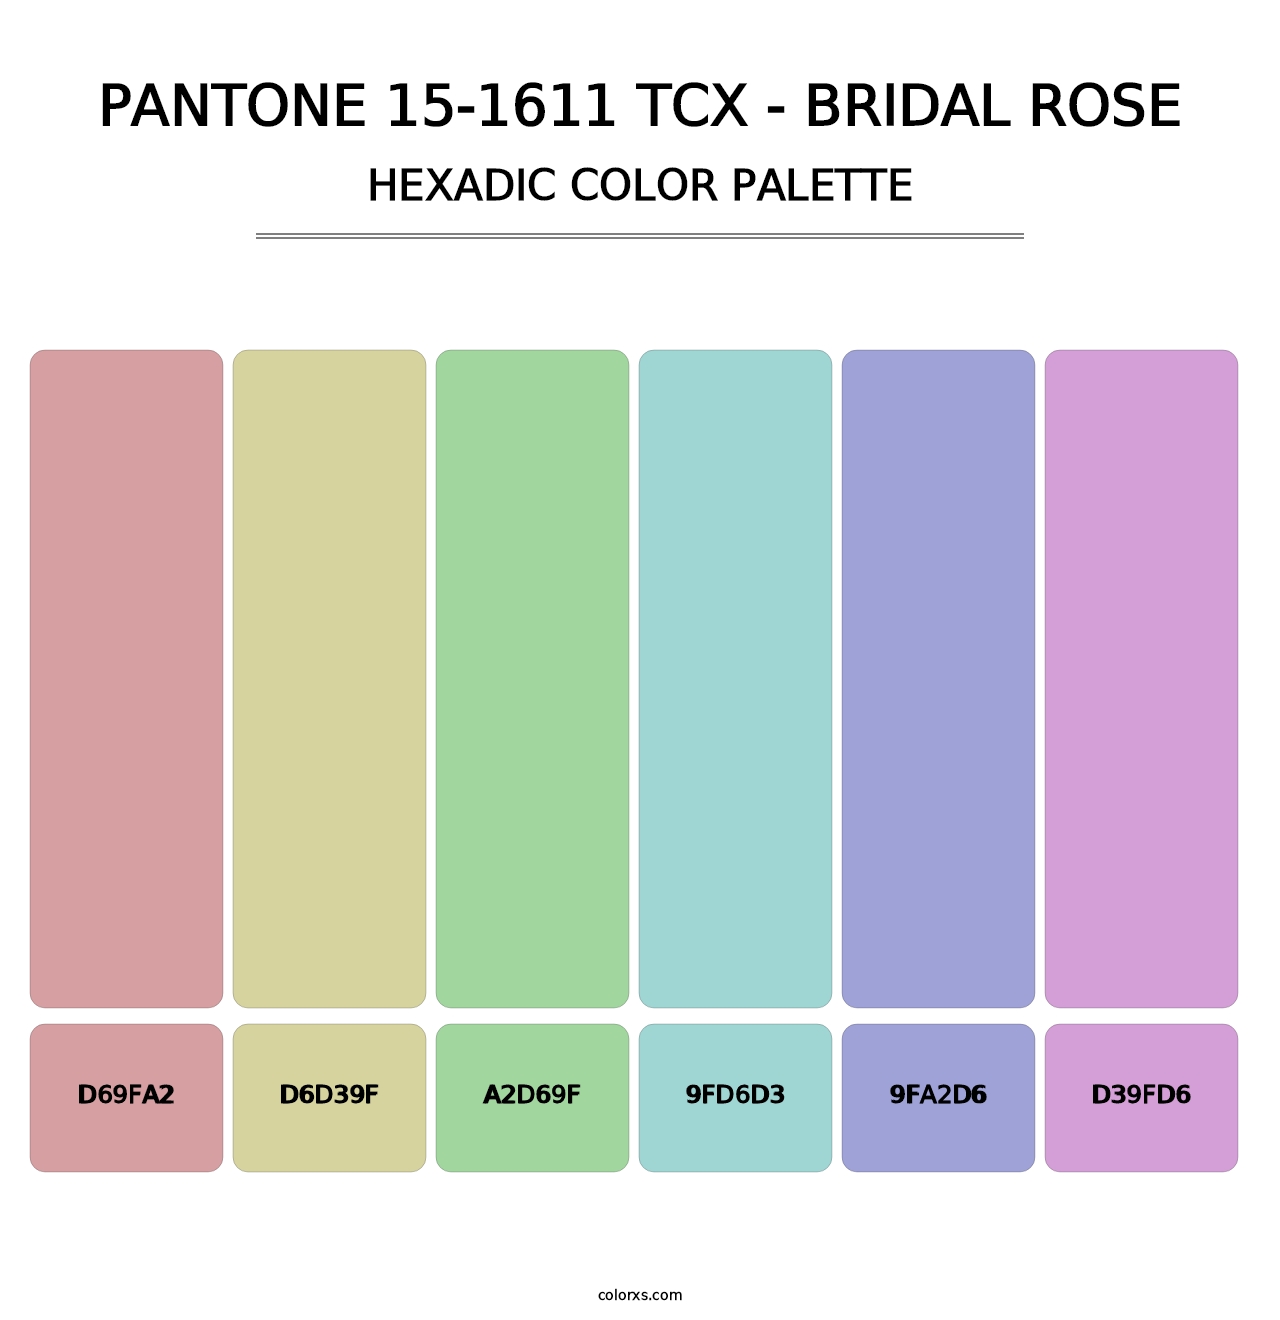 PANTONE 15-1611 TCX - Bridal Rose - Hexadic Color Palette